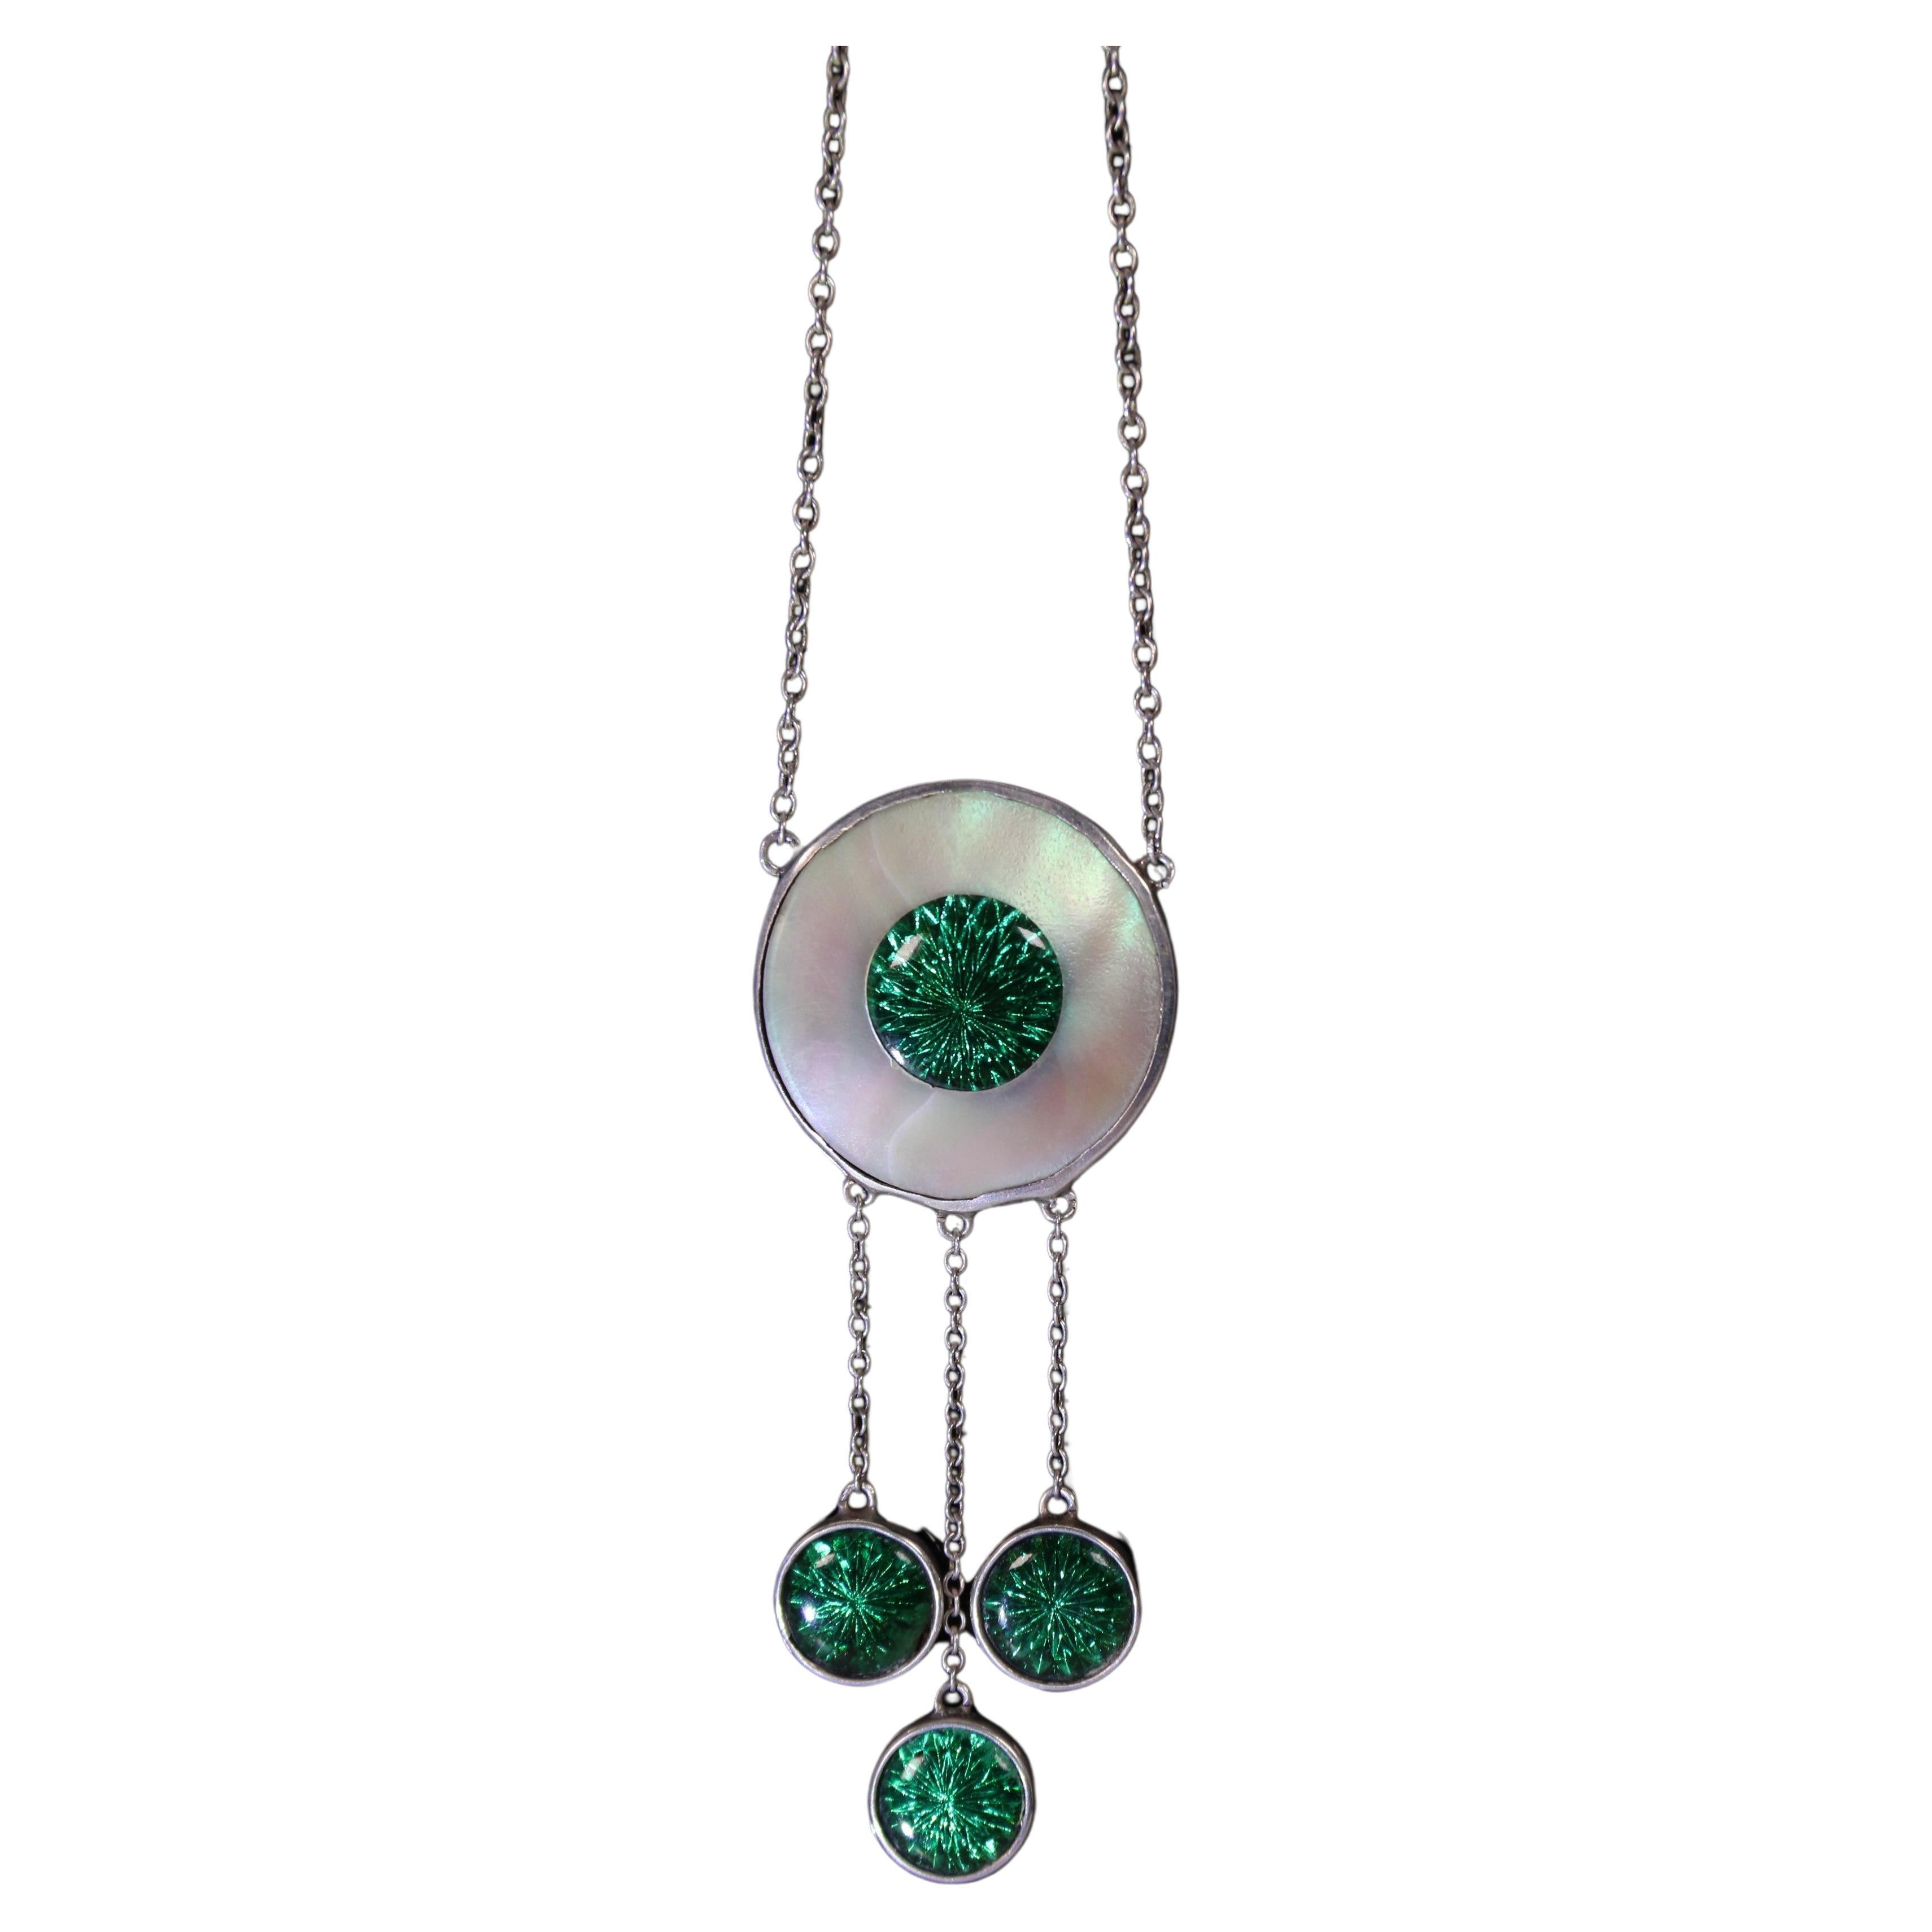 An Art Deco silver mother of pearl green enamel necklace/pendant circa 1920